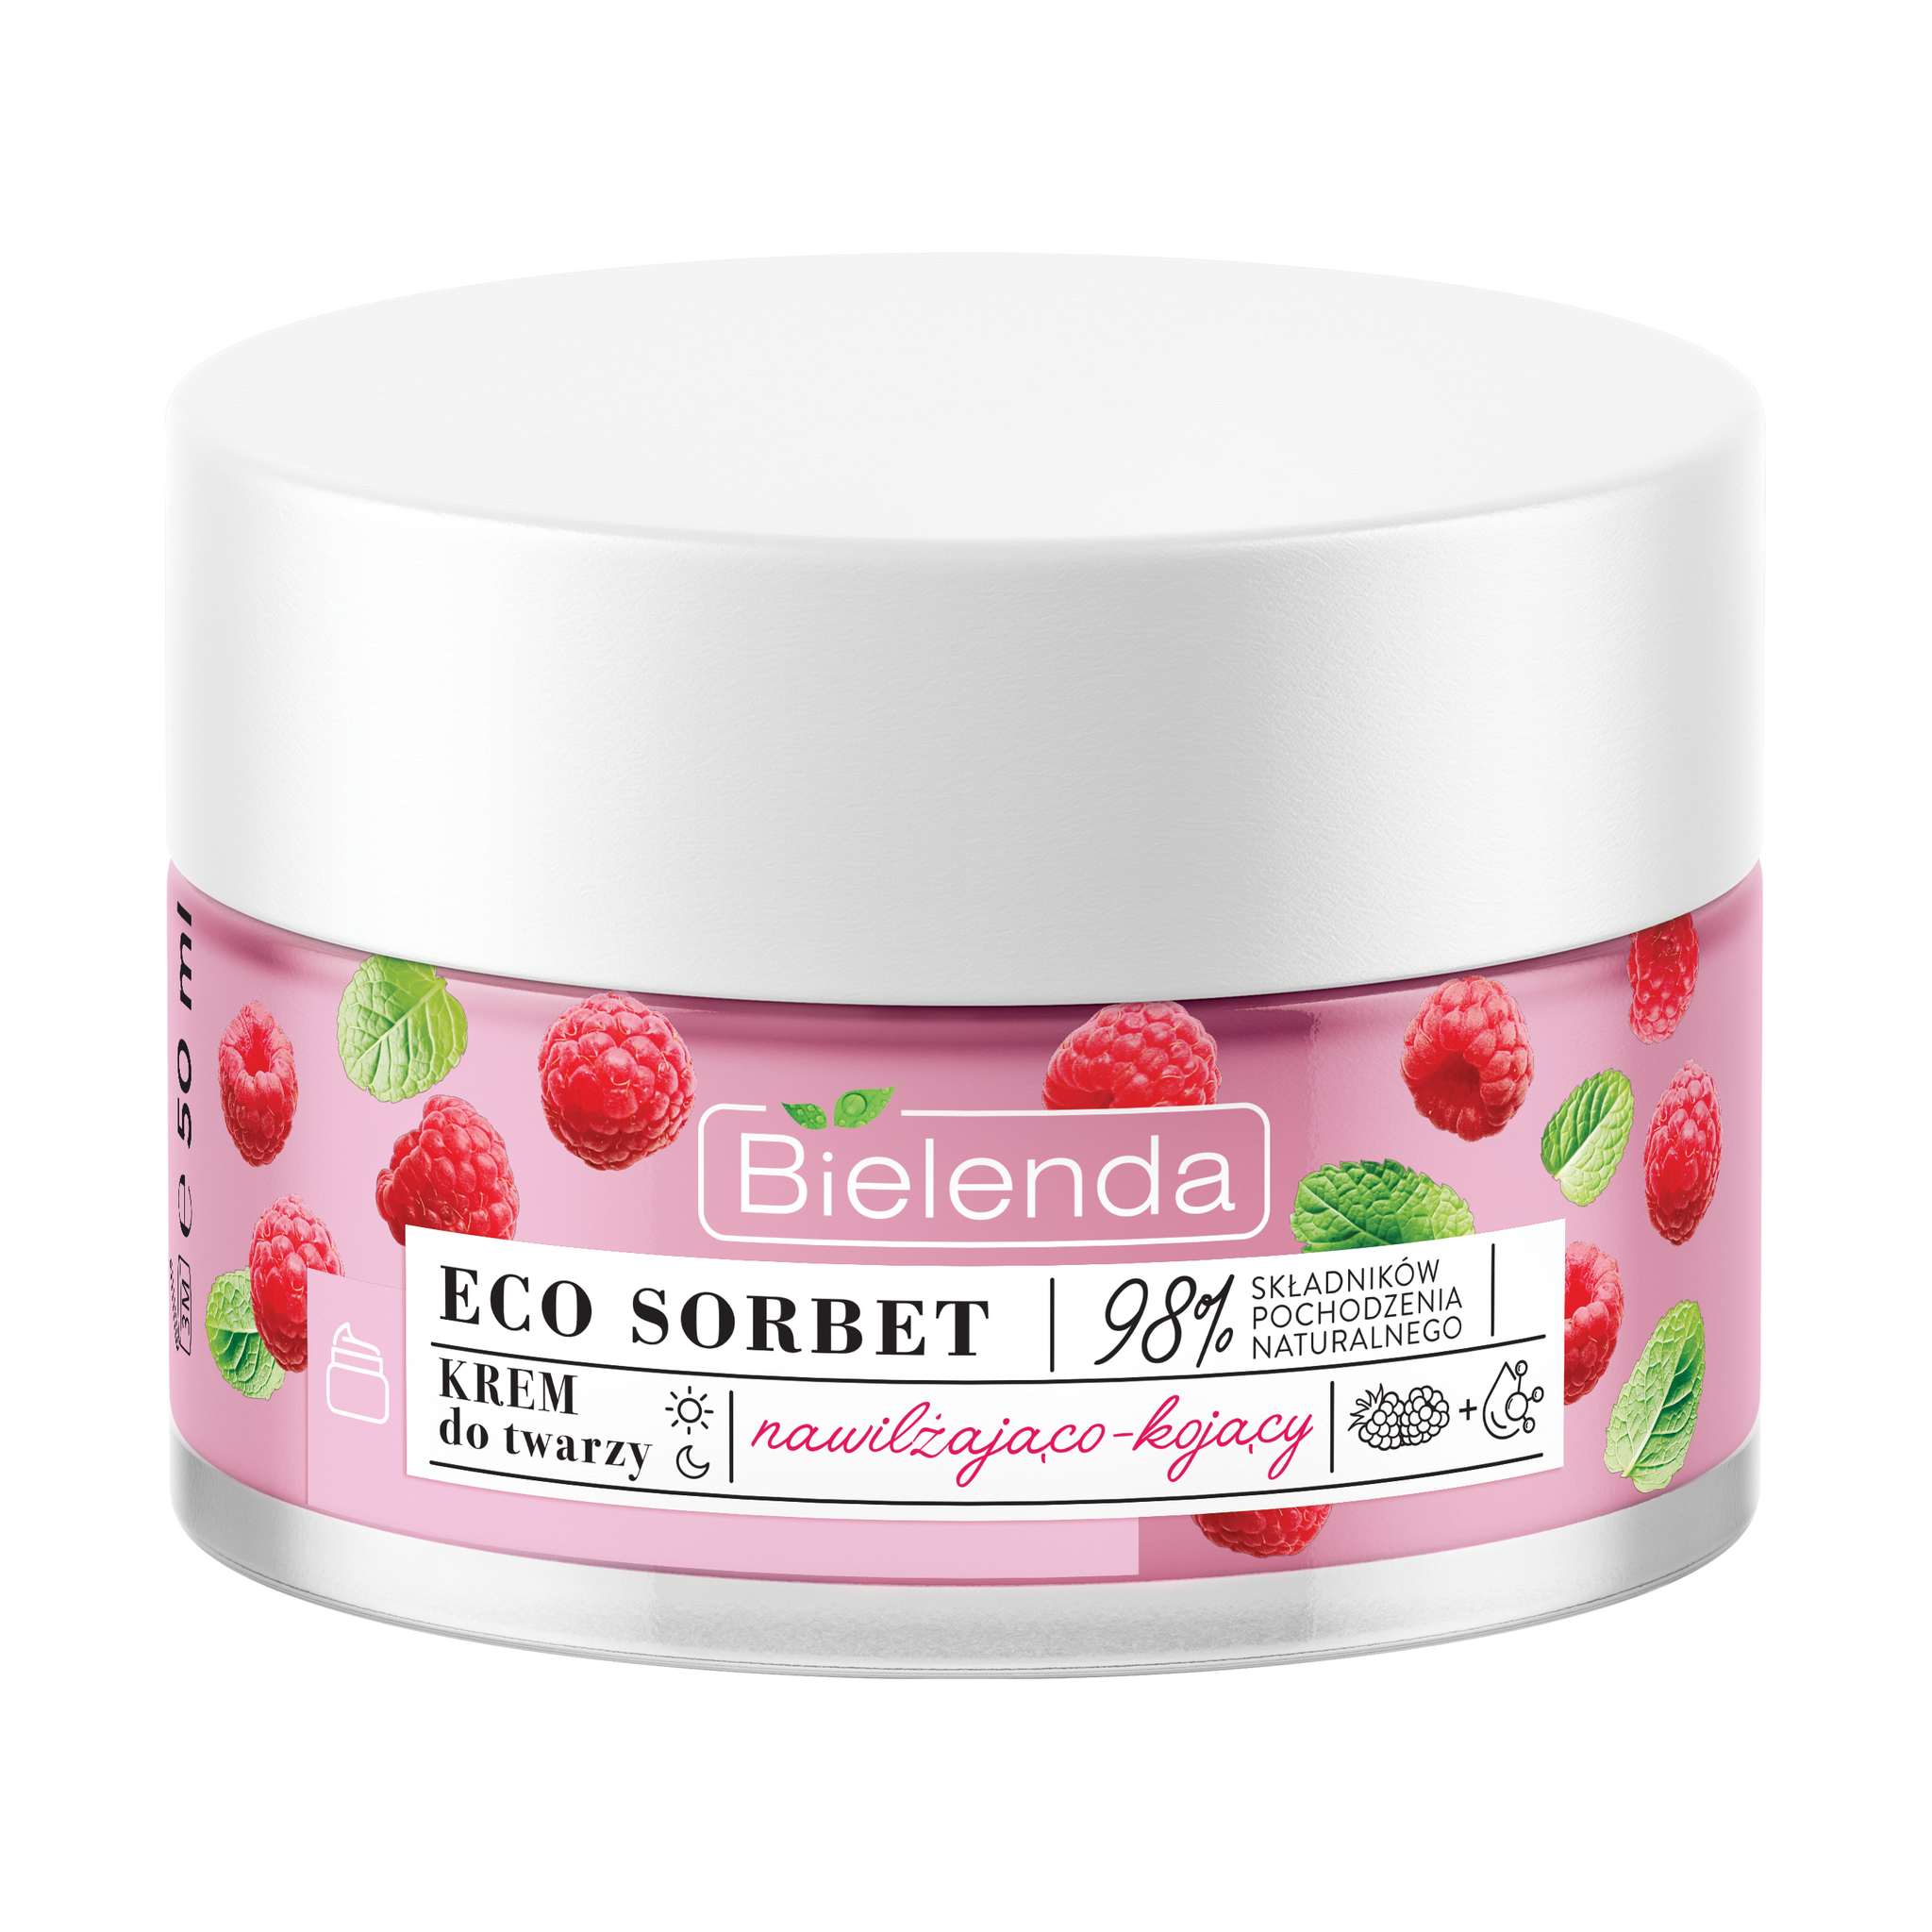 ECO SORBET Raspberry Крем увлажняющий и успокаивающий для лица, 50мл (*6)